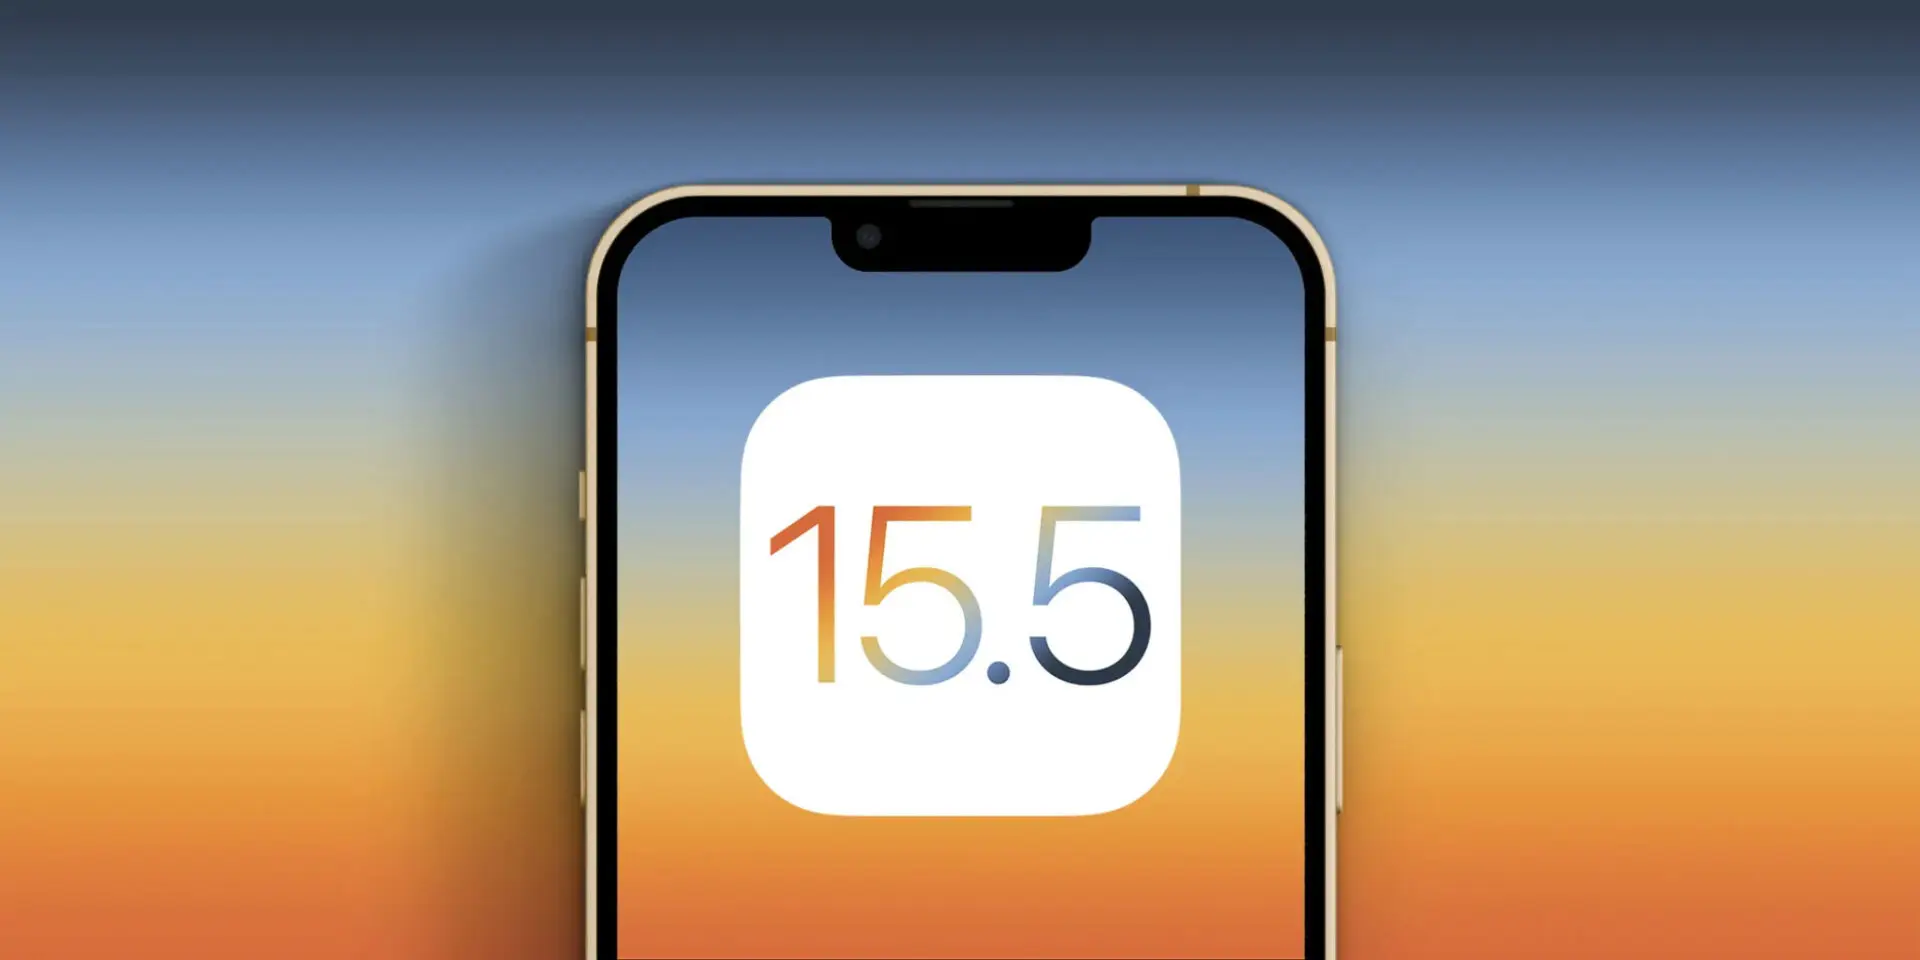 Apple phát hành iOS 15.5 beta 2 cùng với iPadOS 15.5, tvOS 15.5 và watchOS 8.6